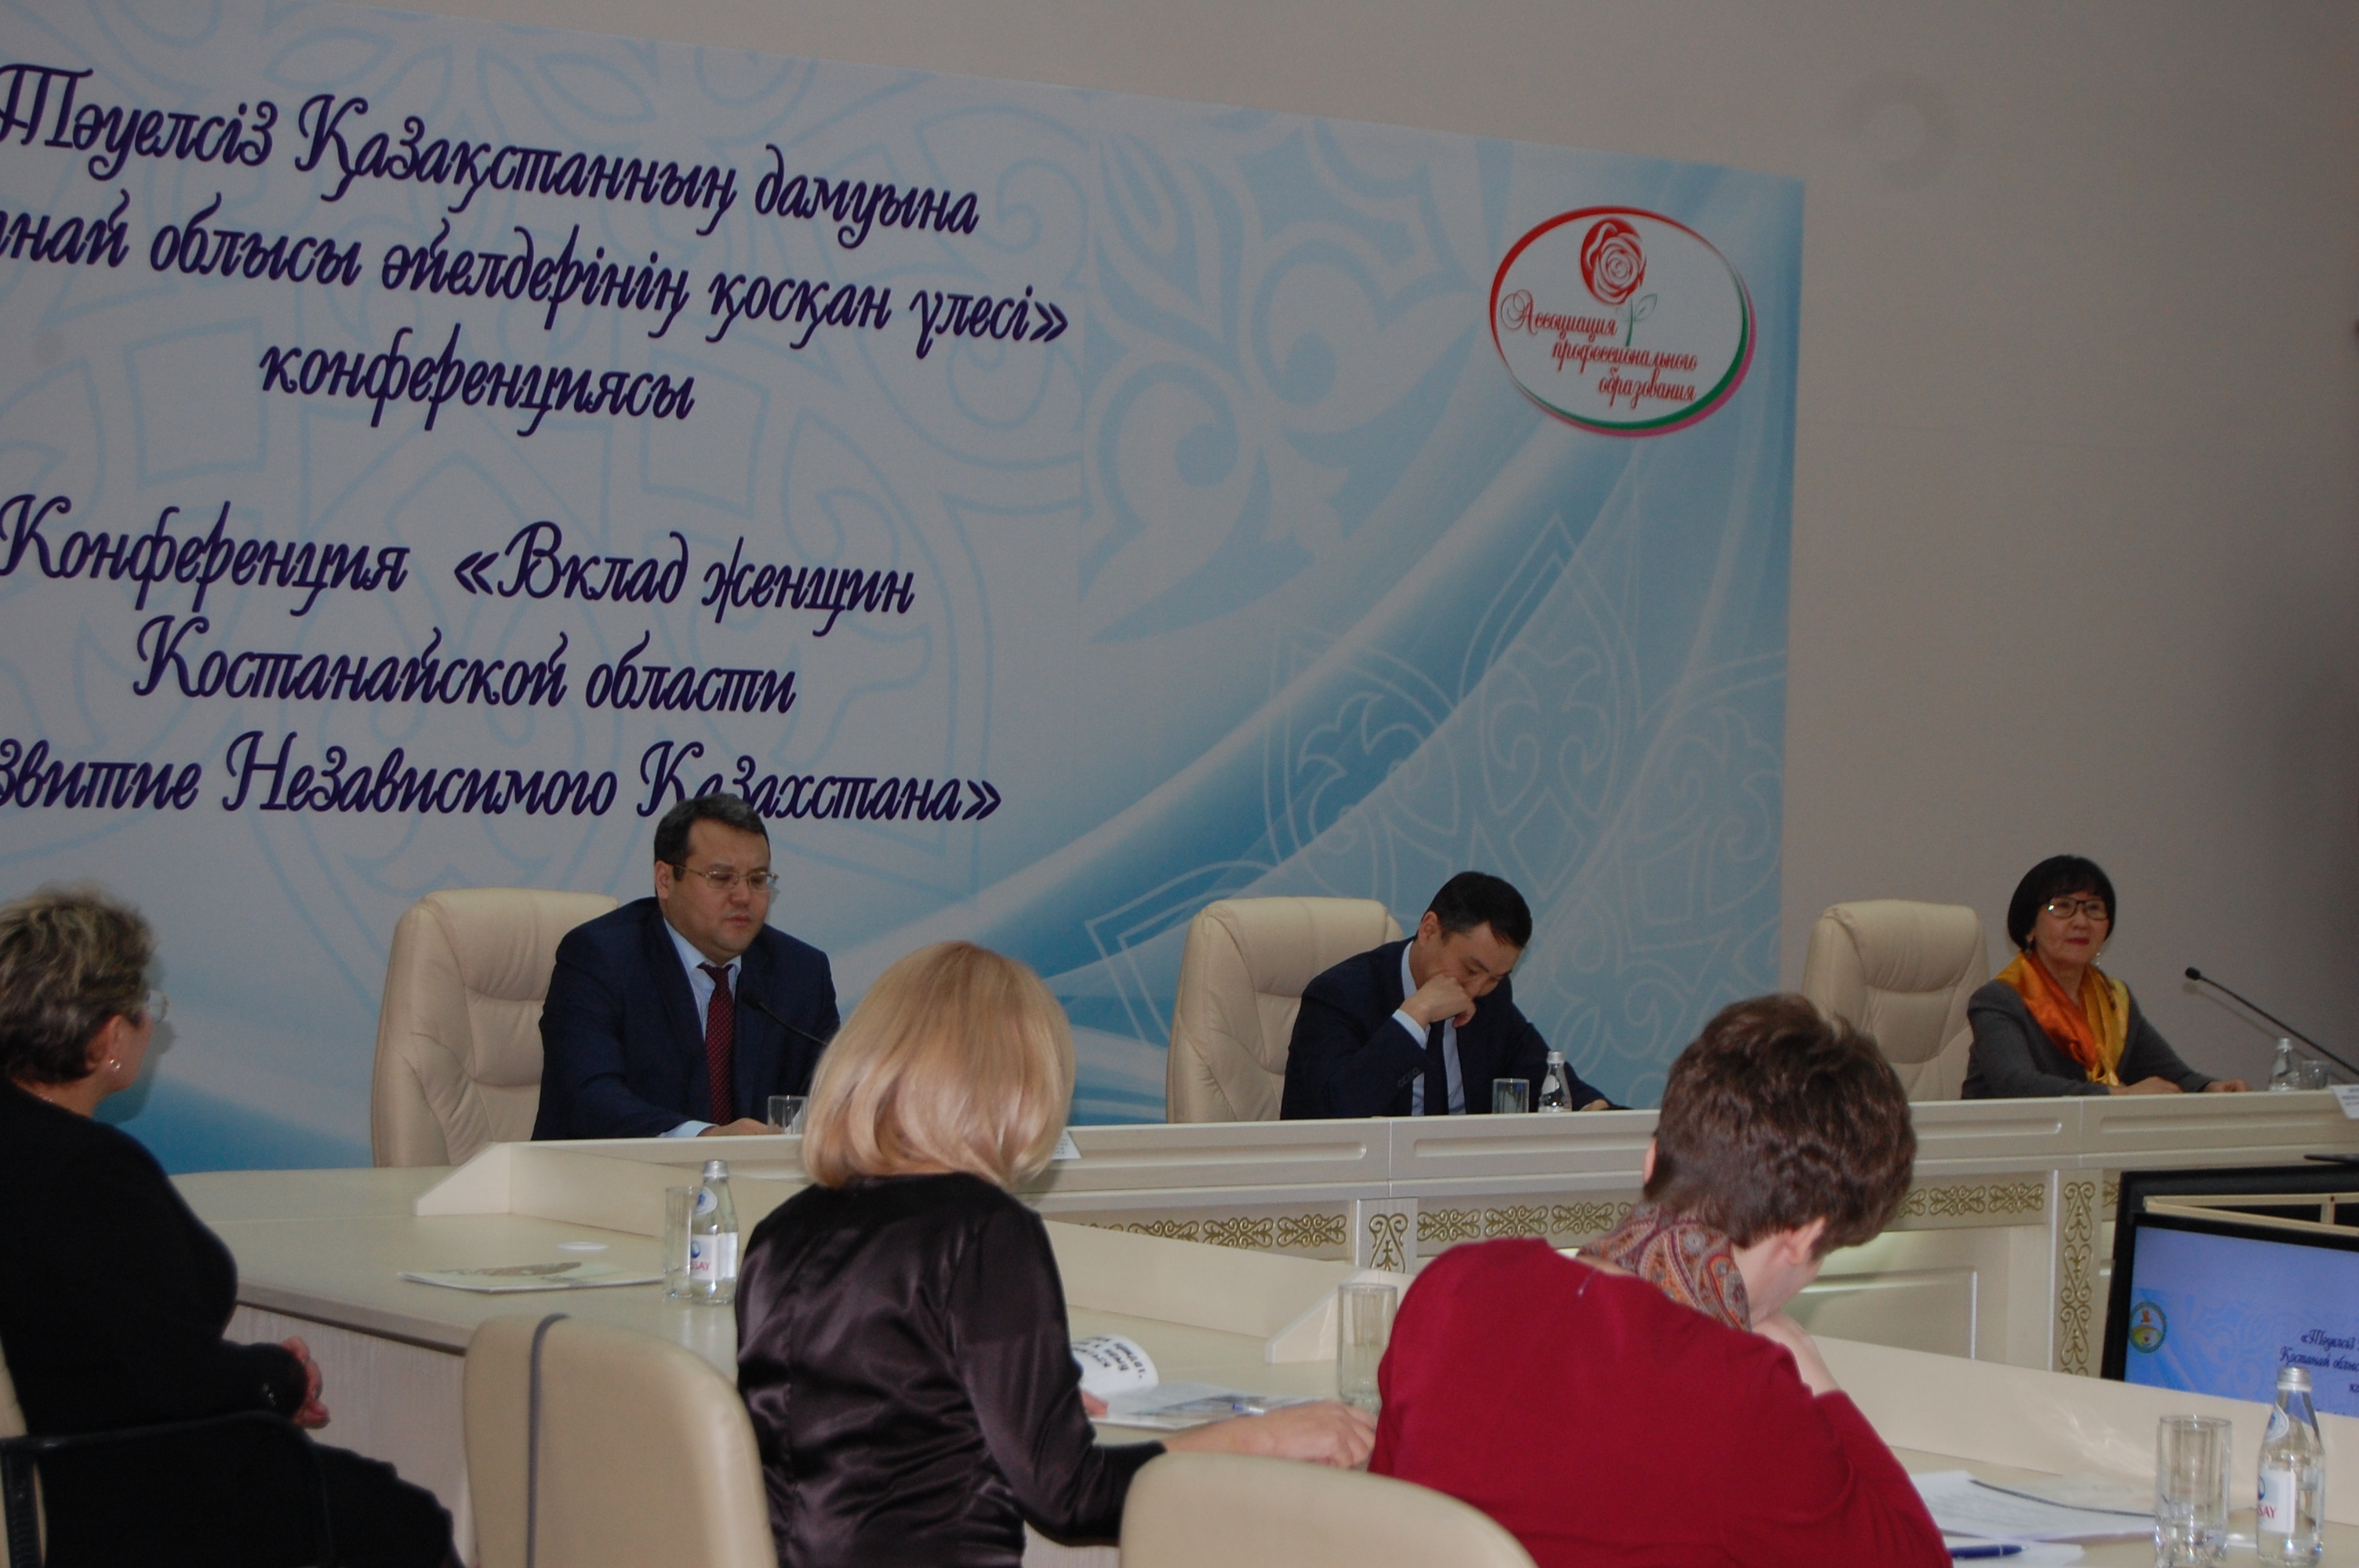 Костанайских деловых женщин наградили за вклад в развитие Независимого Казахстана